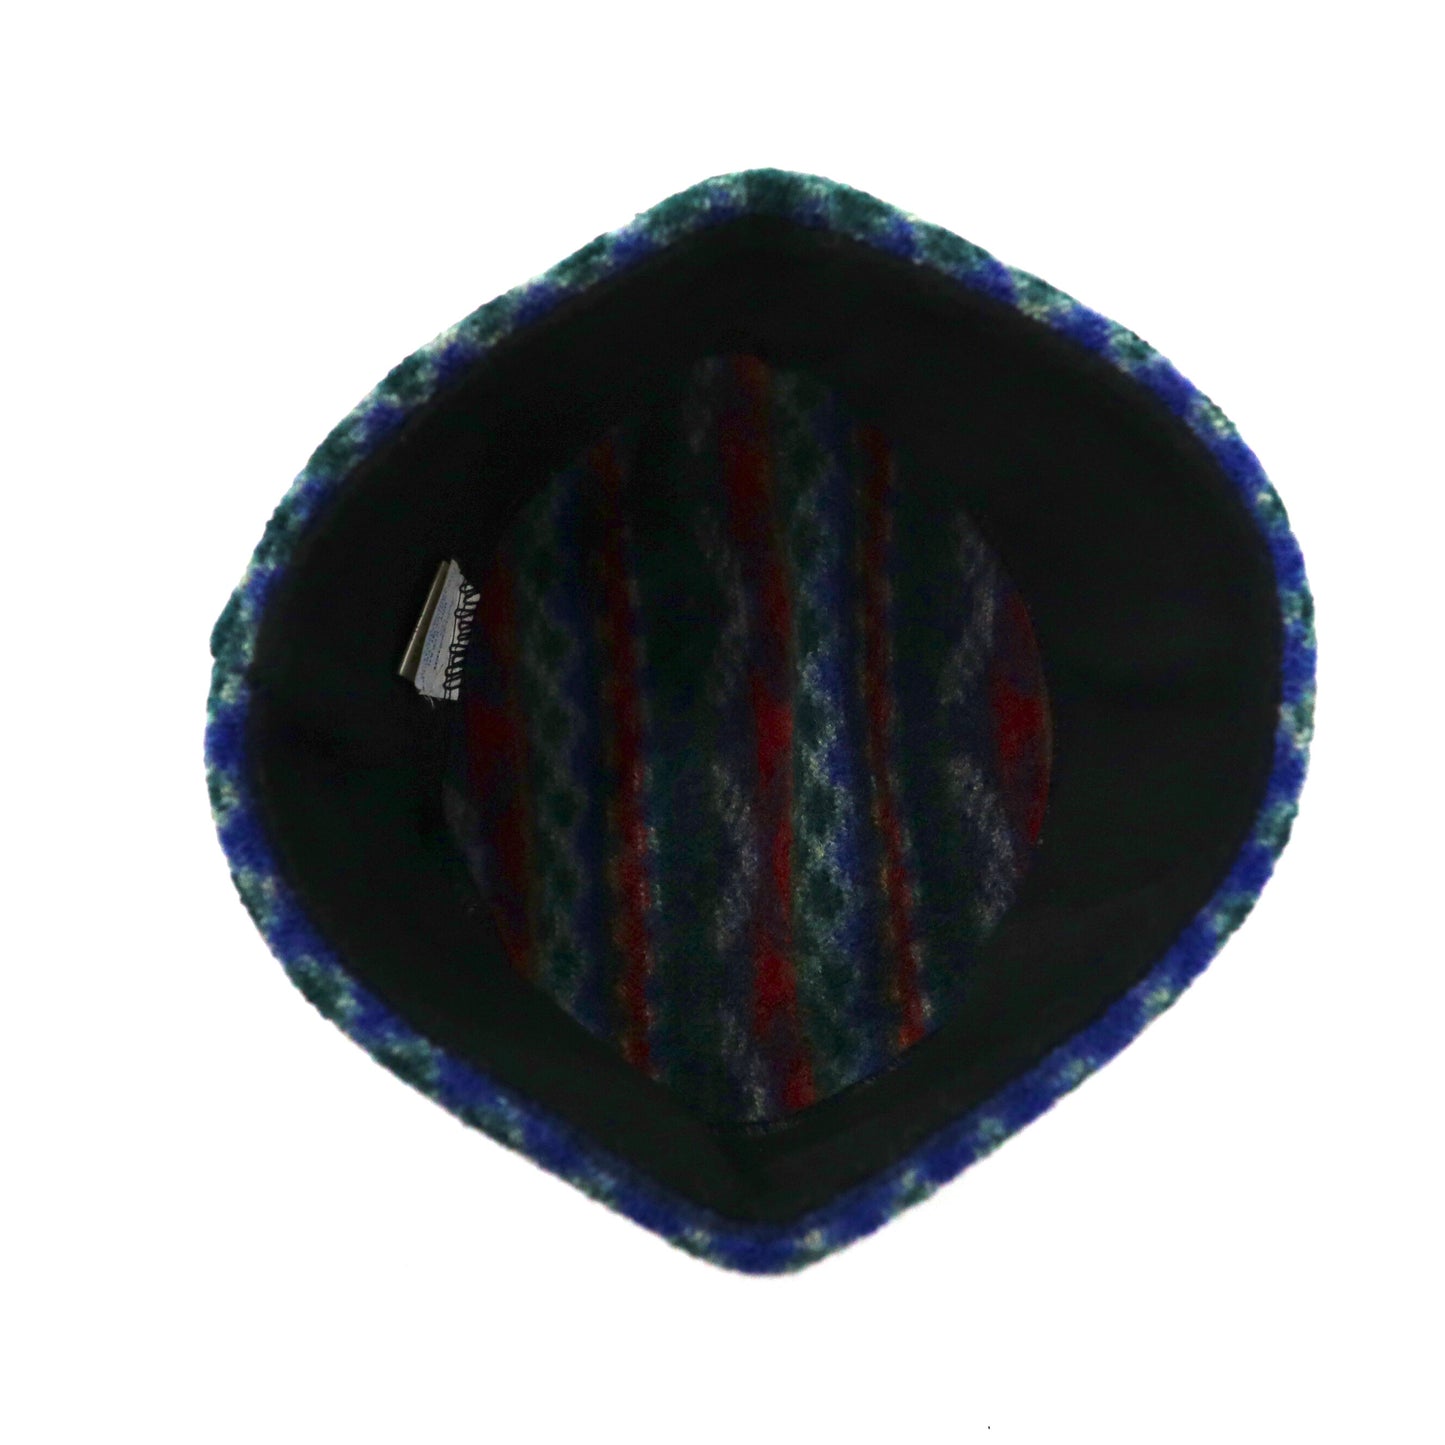 BULA ニット帽 バケットハット ADULT マルチカラー ウール 総柄 ネイティブ イタリア製